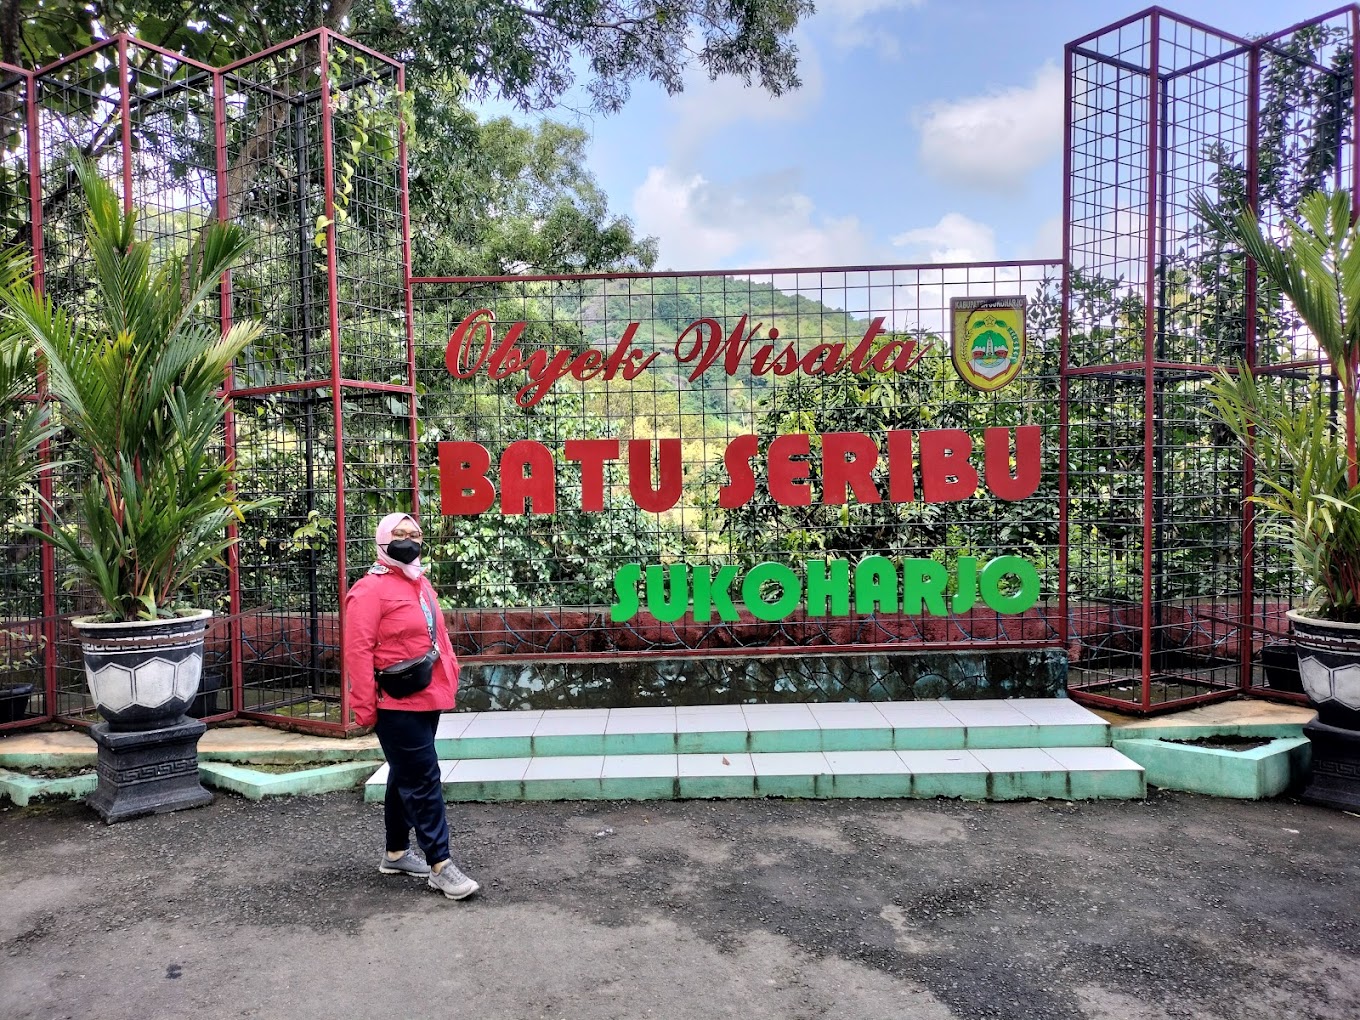 Destinasi Wisata Umbul Pecinan Batu Seribu di Bulu Sukoharjo Jawa Tengah